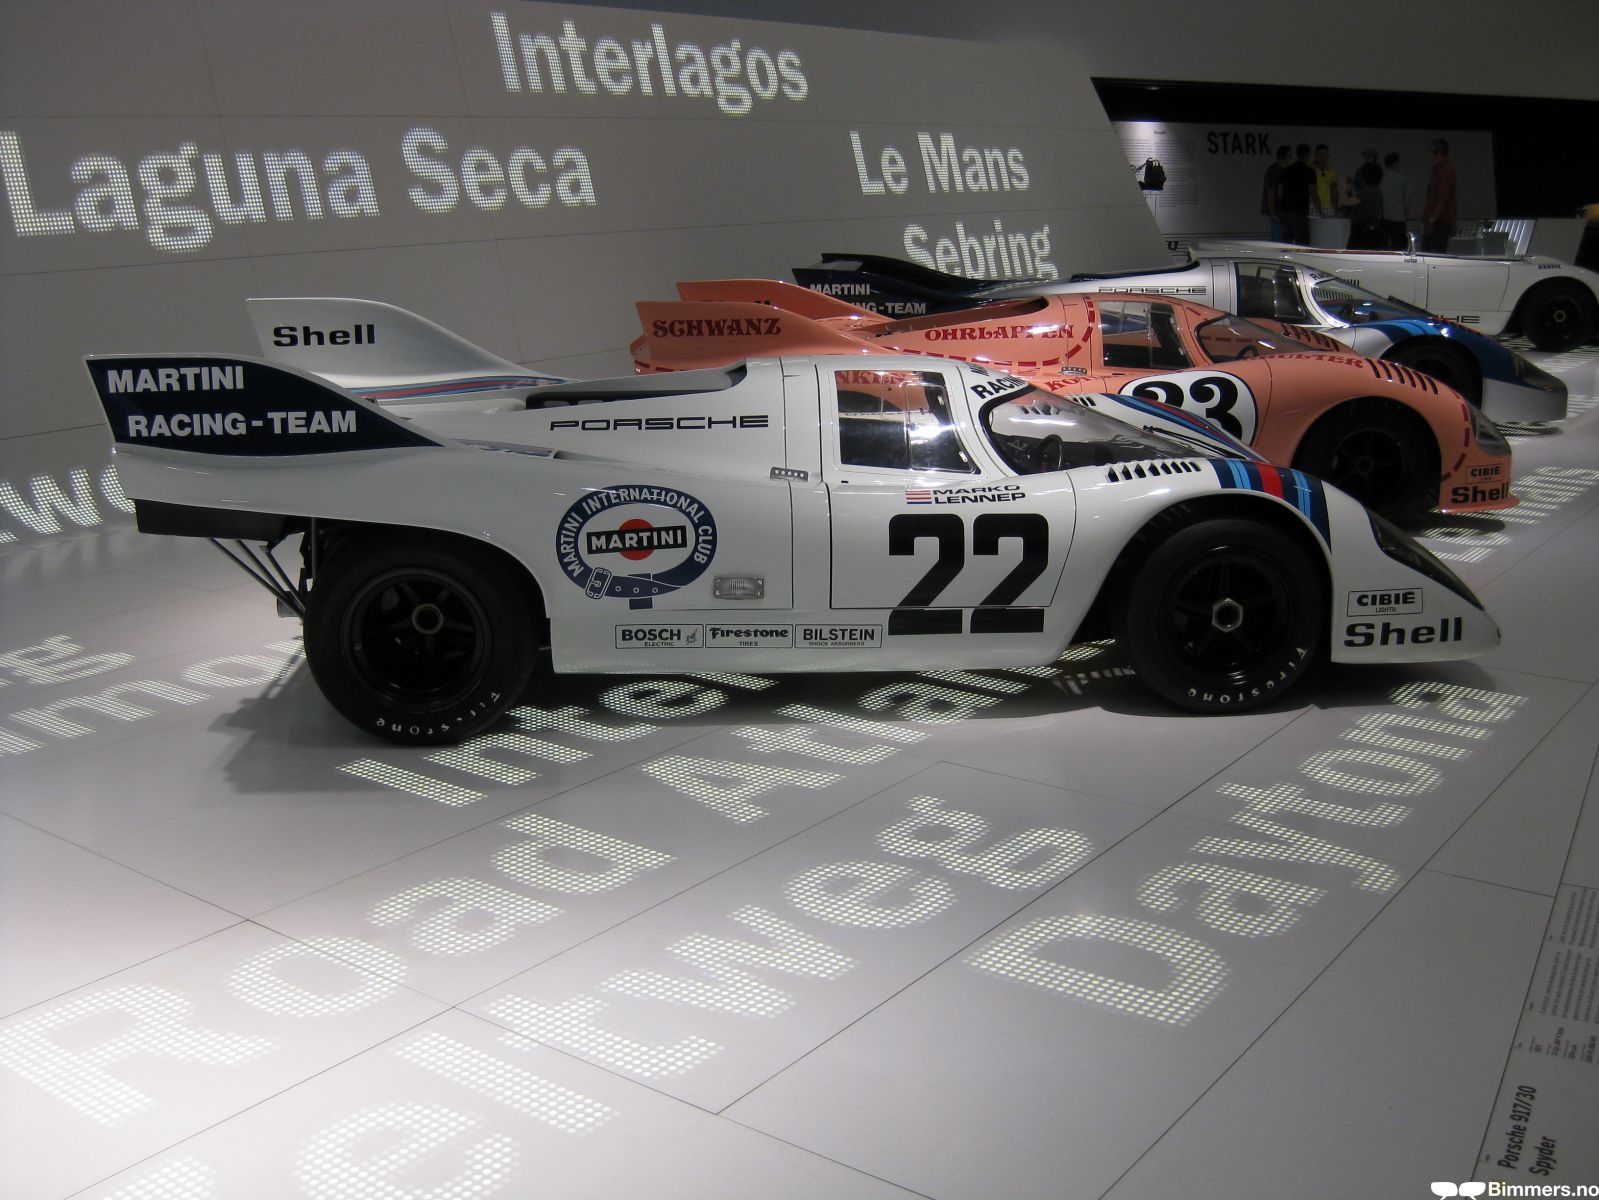 Porsche 917